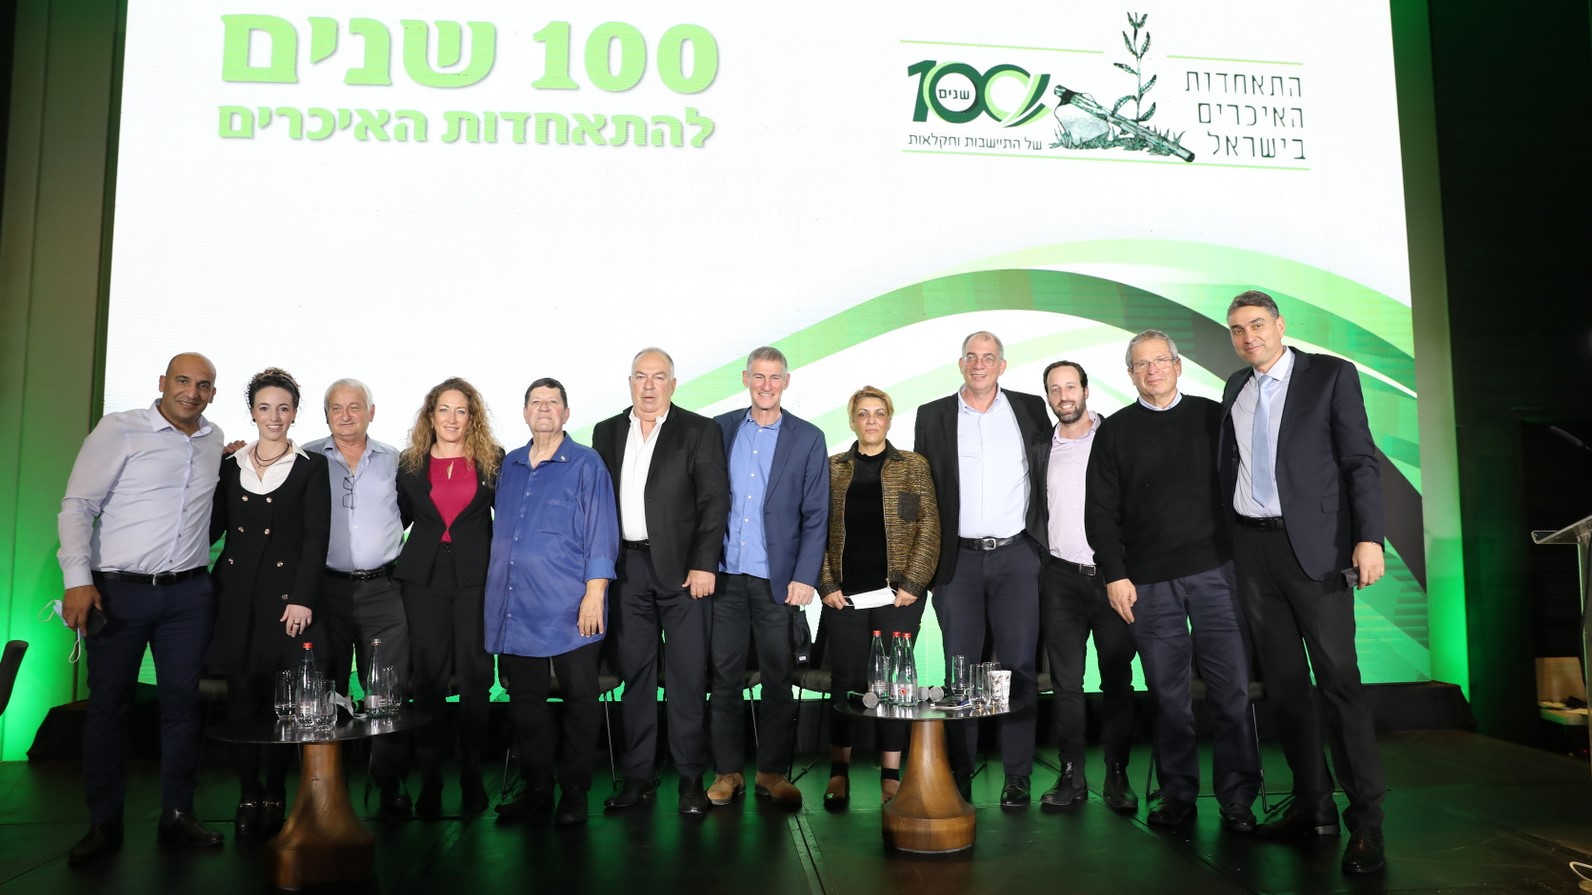 ראשי ההנהגה החקלאית וחברי הכנסת בכנס לציון 100 שנים להתאחדות האיכרים. צילום: חן גלילי 